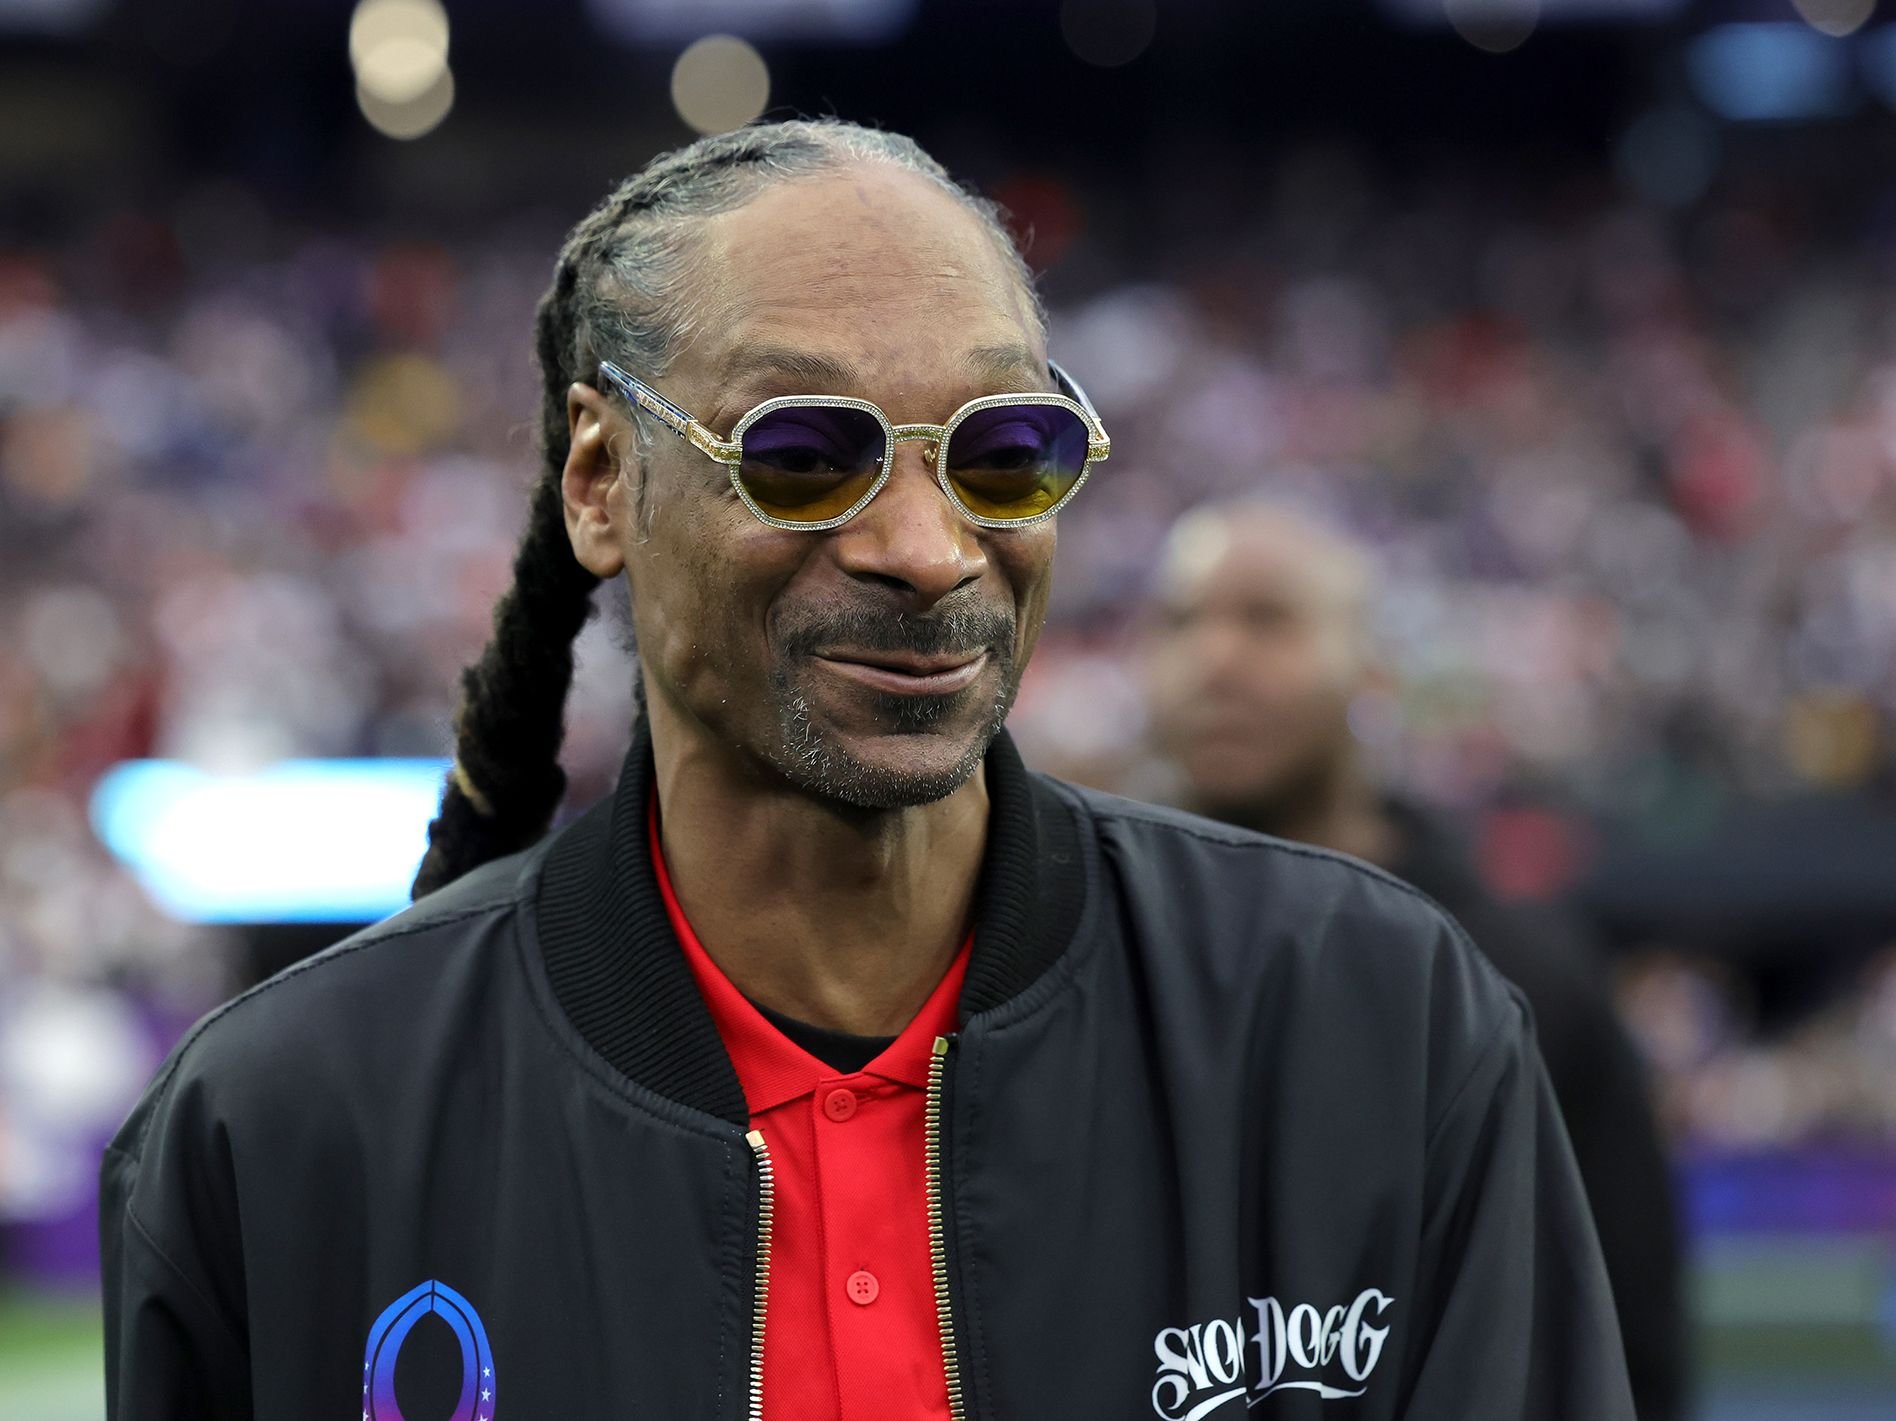 Կառավարությունը հերքում է լուրերը, թե ռեփեր Snoop Dogg-ի համերգի համար 23 միլիոն դոլար է հատկացրել